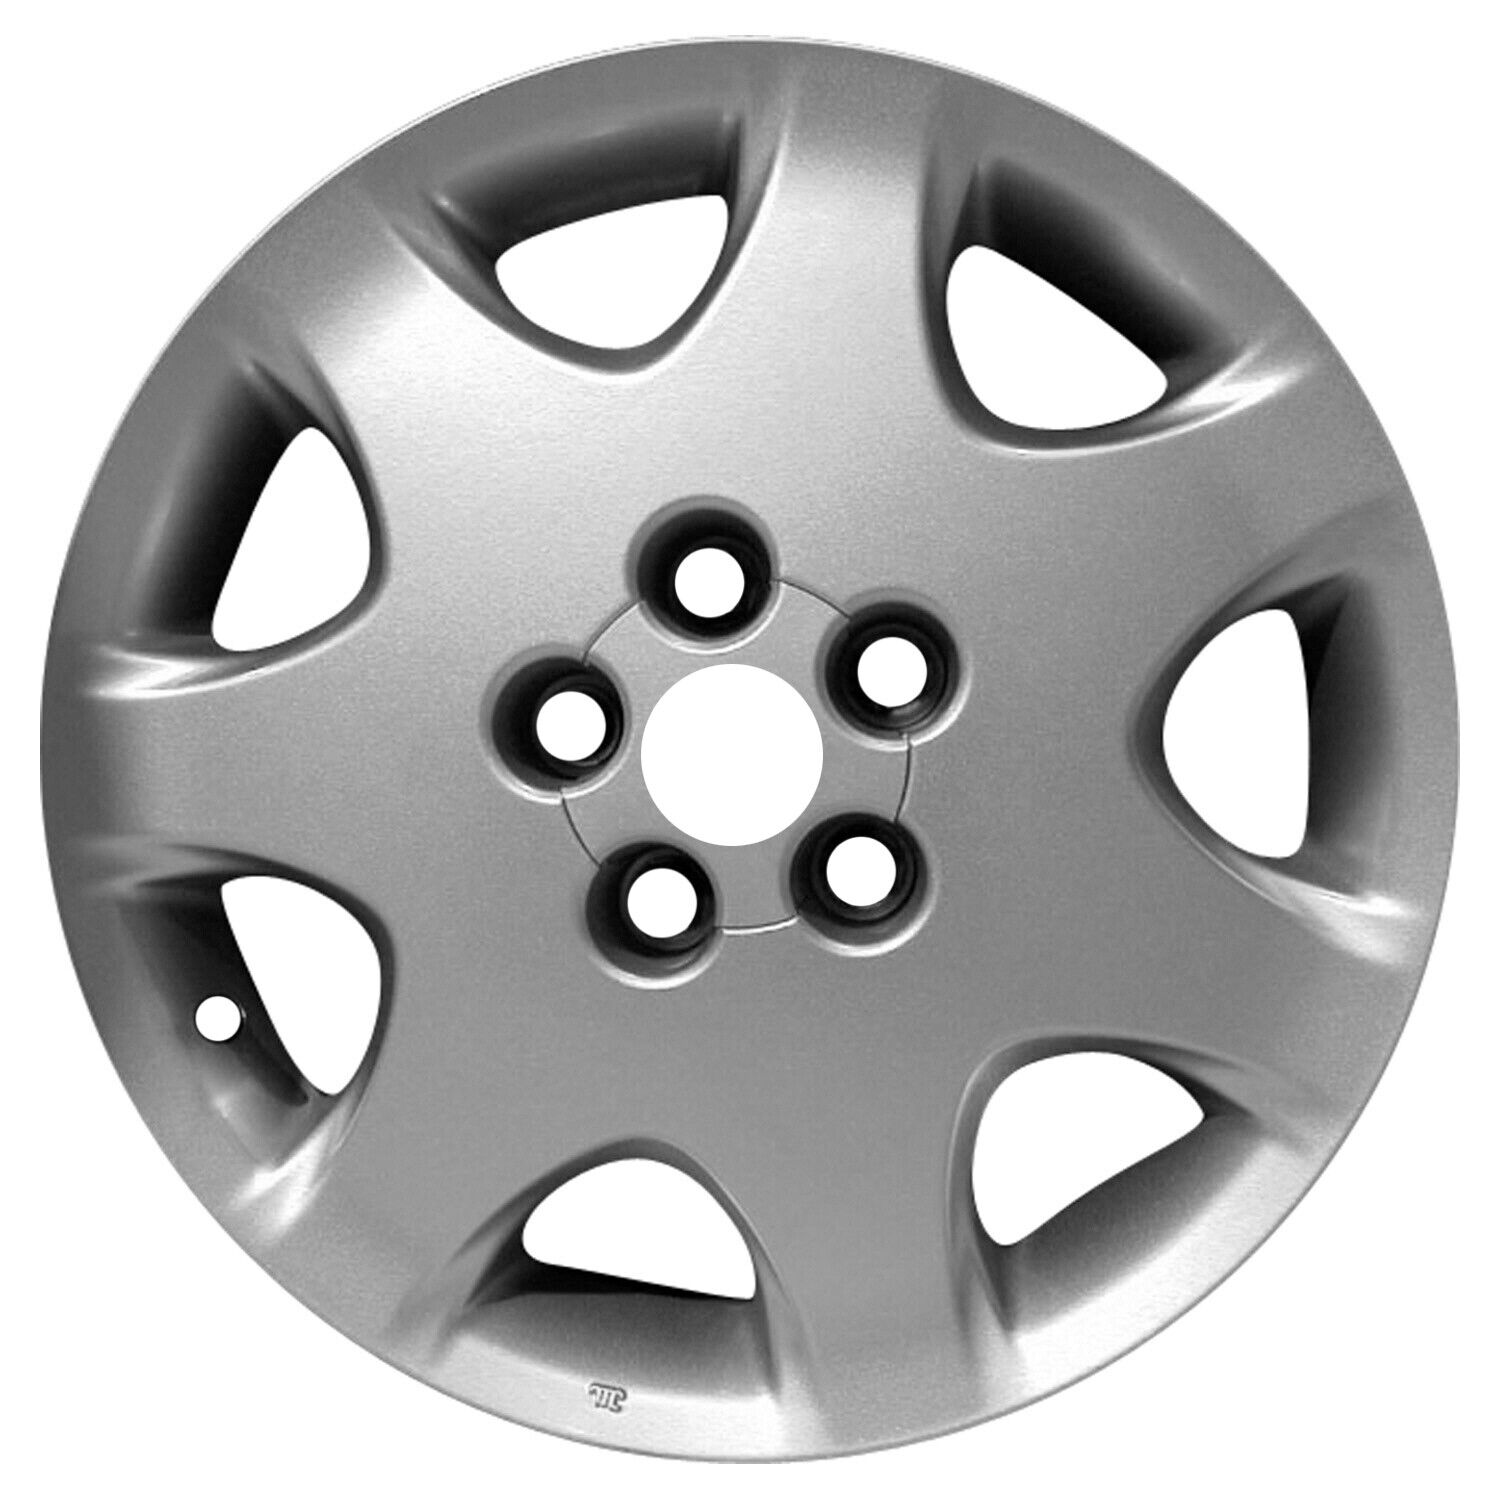 74159 Reconditioned OEM Aluminum Wheel 17x7.5 fits 2001-2004 Lexus LS430